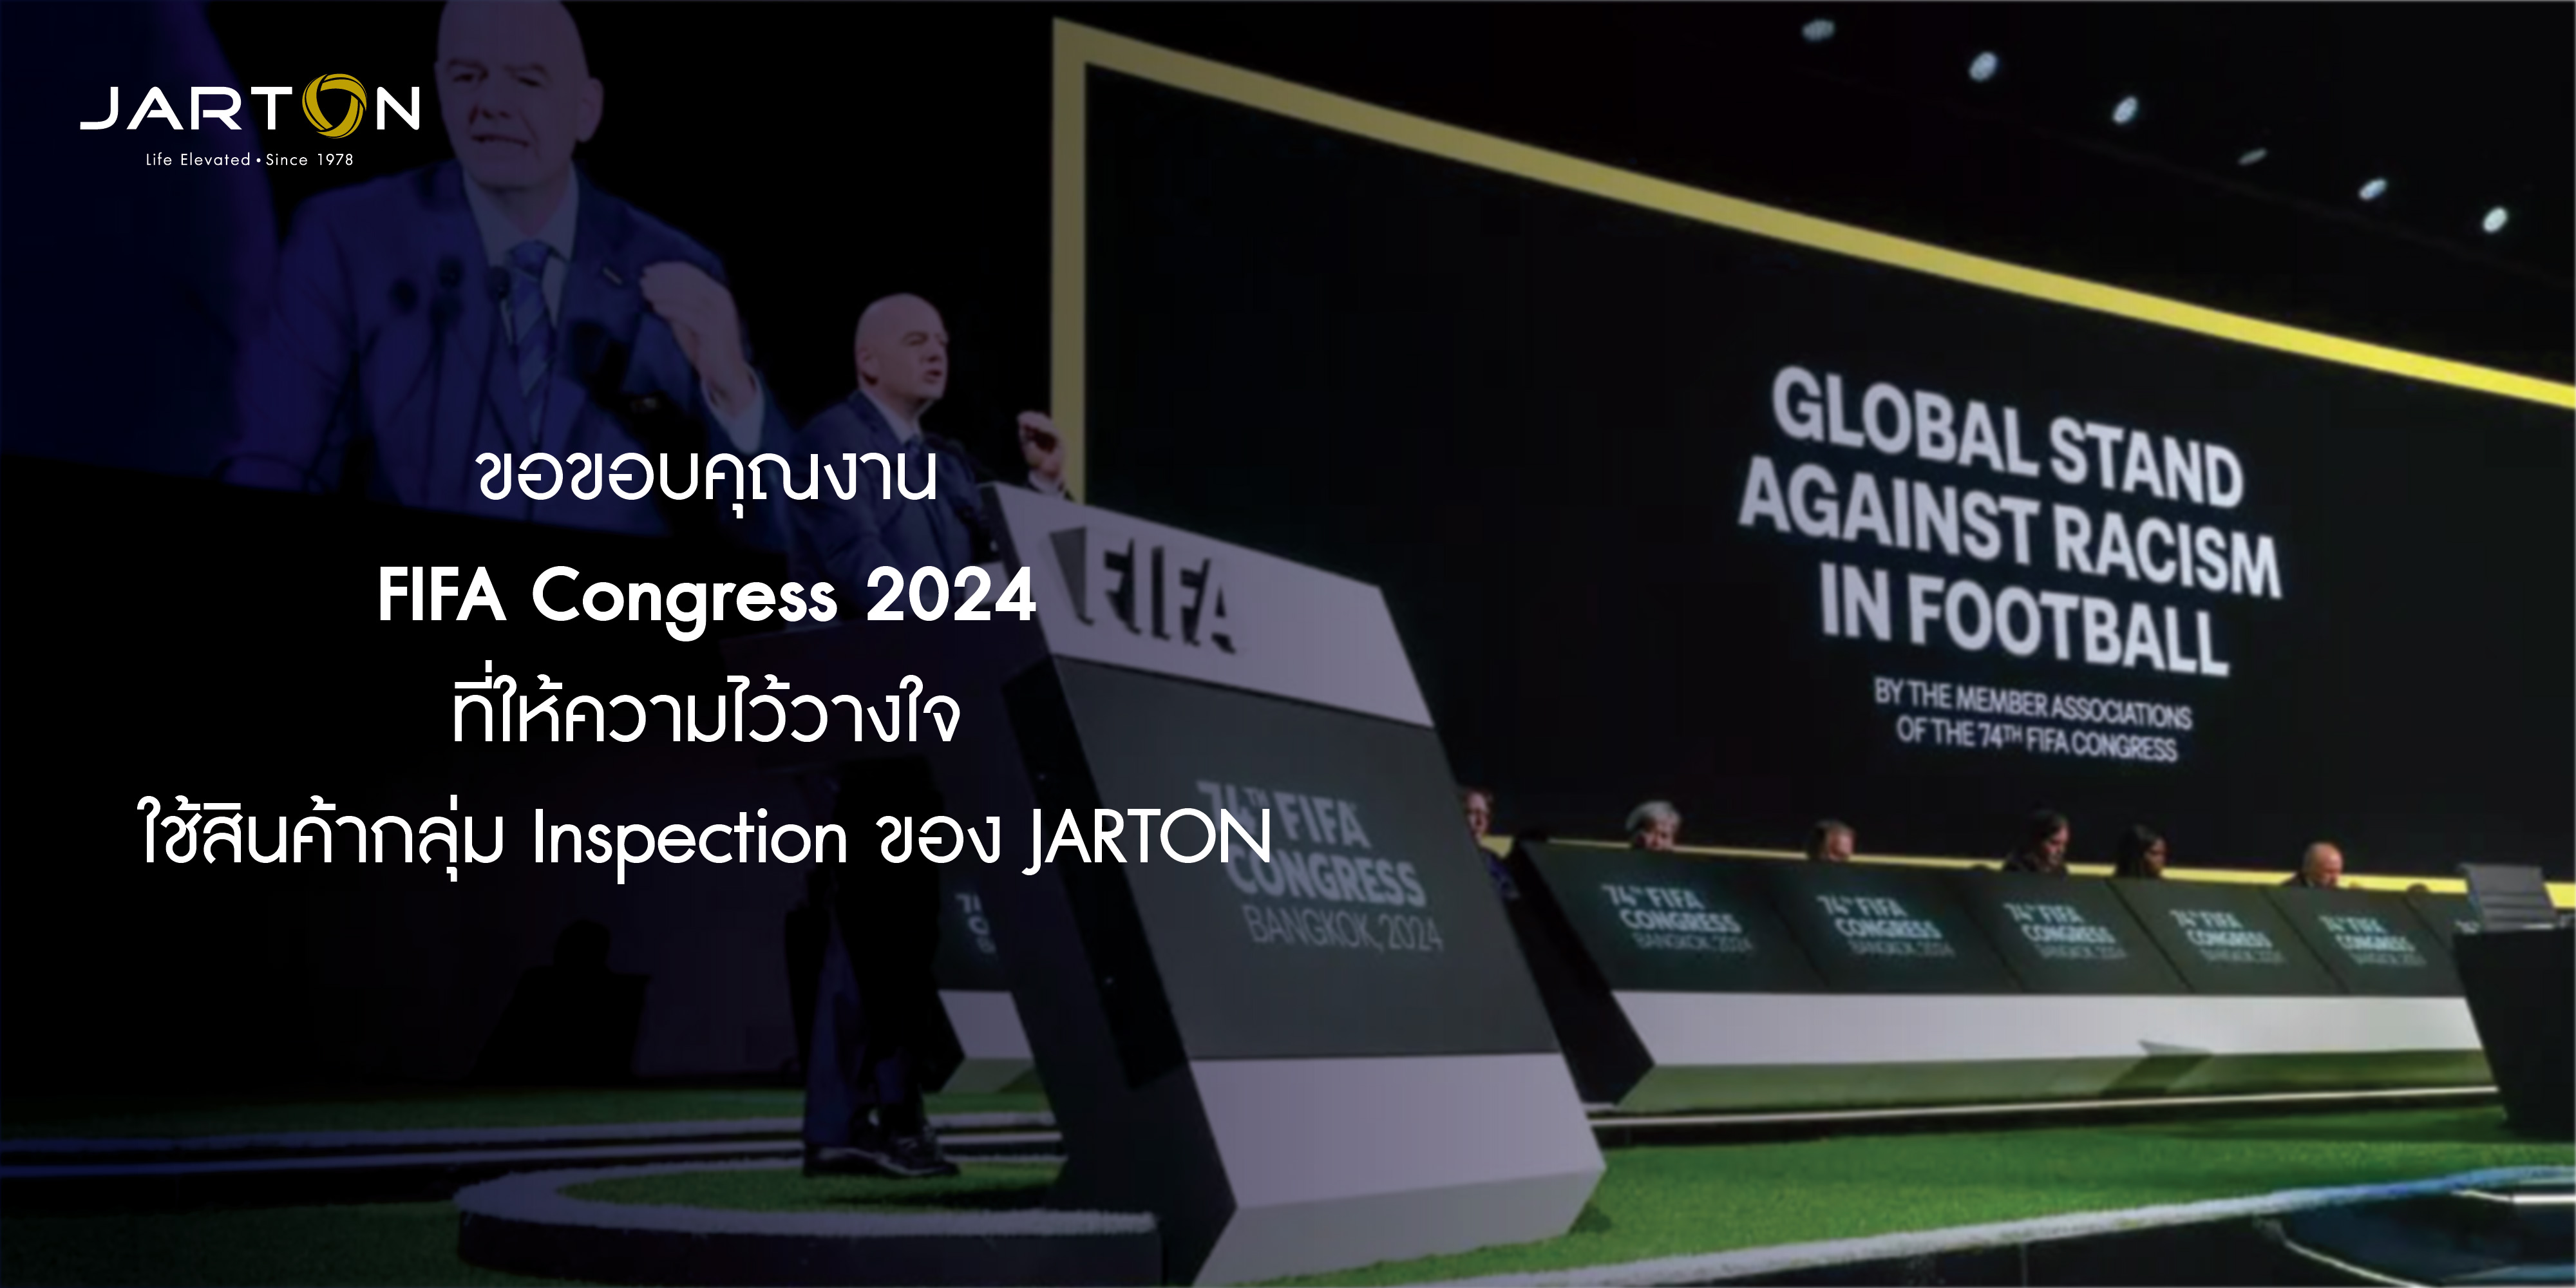 "แบรนด์แรกและแบรนด์เดียว" ที่ได้รับภารกิจดูแลความปลอดภัยให้กับผู้เข้าร่วมงาน FIFA Congress 2024